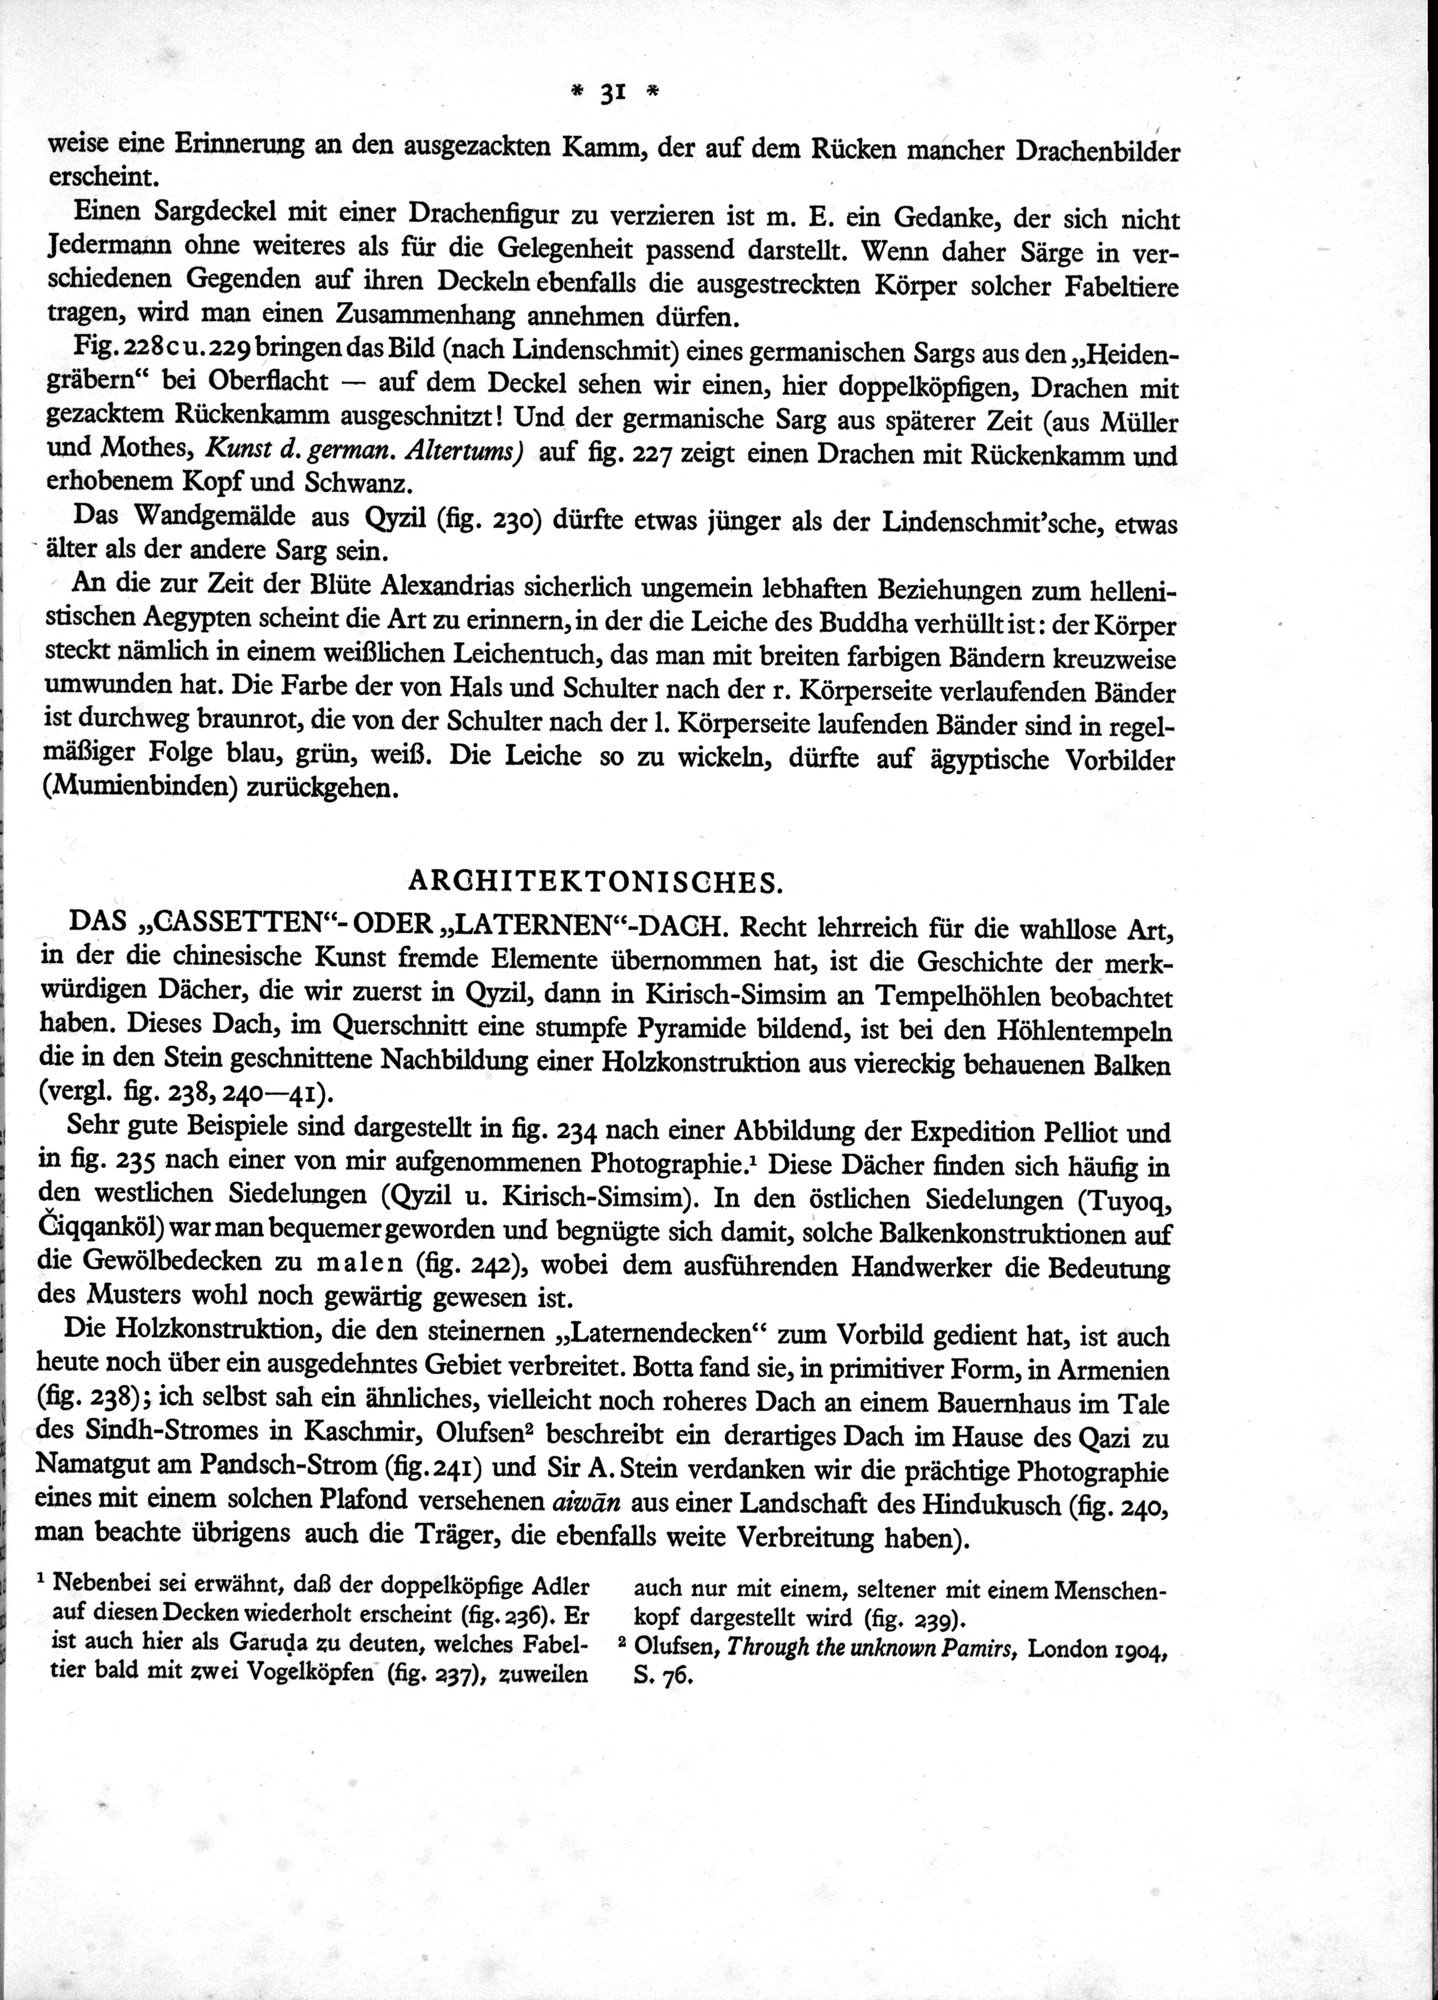 Bilderatlas zur Kunst und Kulturgeschichte Mittel-Asiens : vol.1 / Page 35 (Grayscale High Resolution Image)